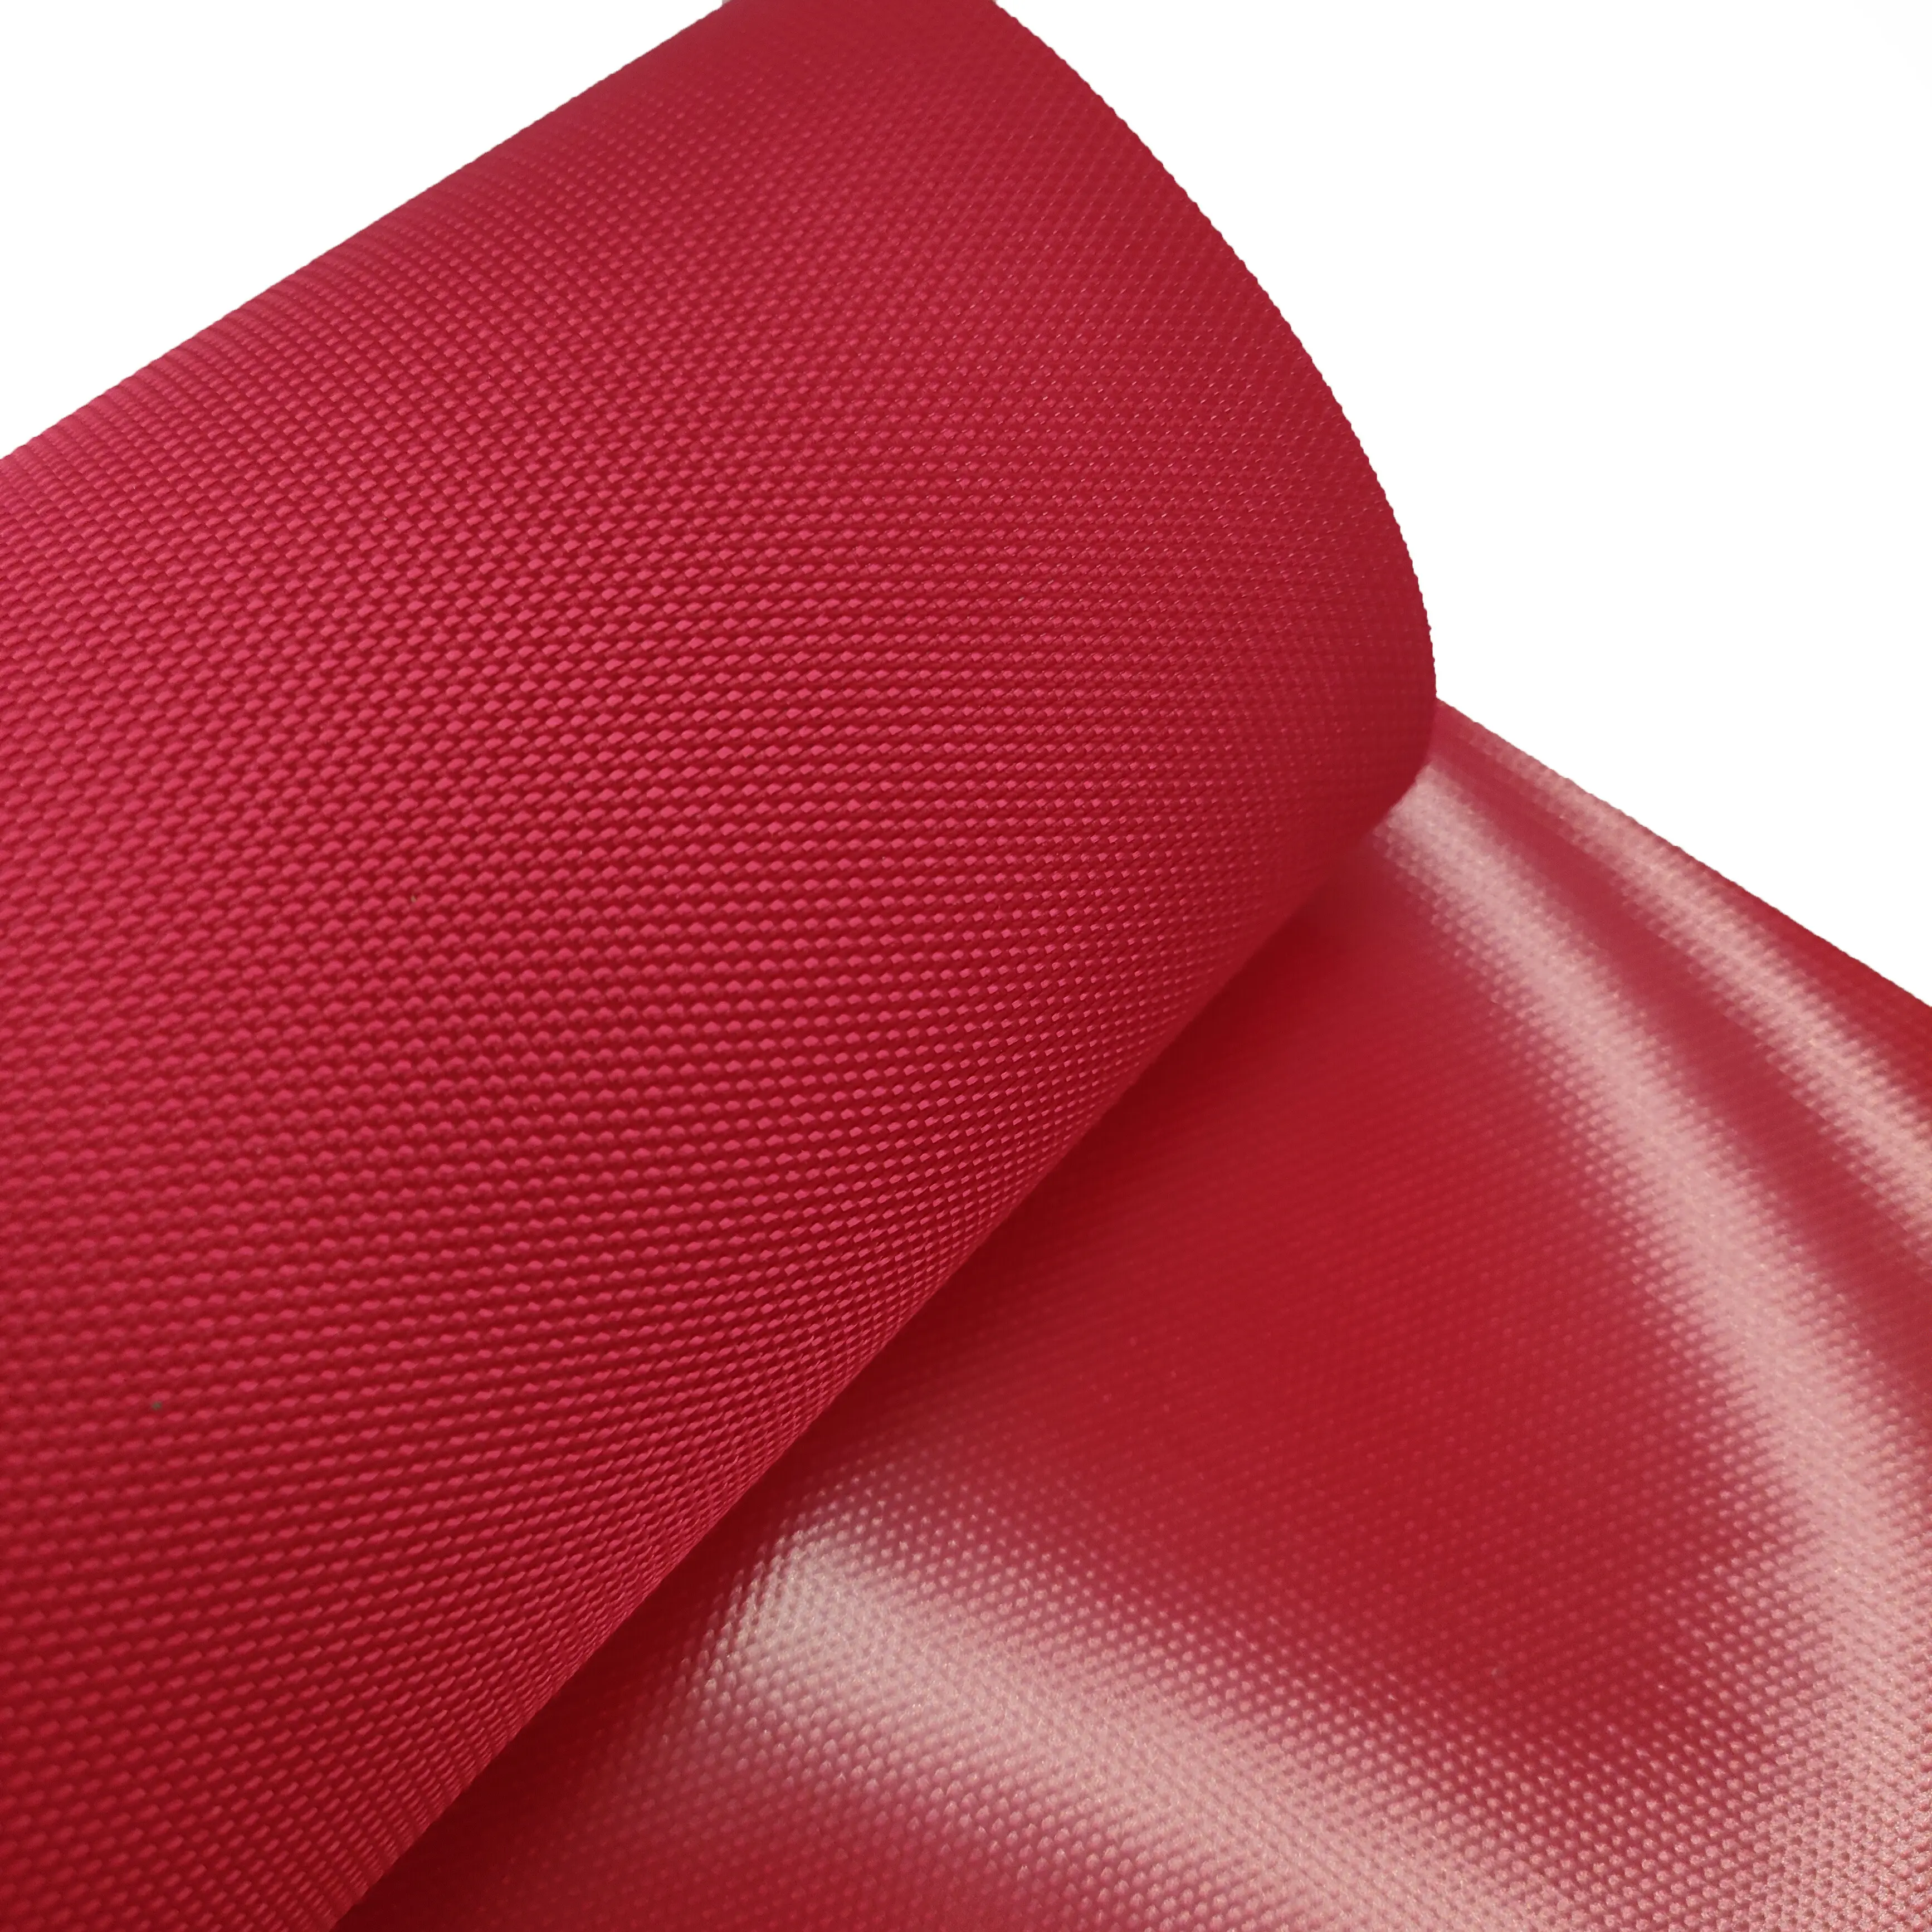 Nhà Máy Bán Hàng Trực Tiếp Hot 100% Polyester Không Thấm Nước 600D Guci Trong Suốt Dưới PVC UV Kháng Hành Lý